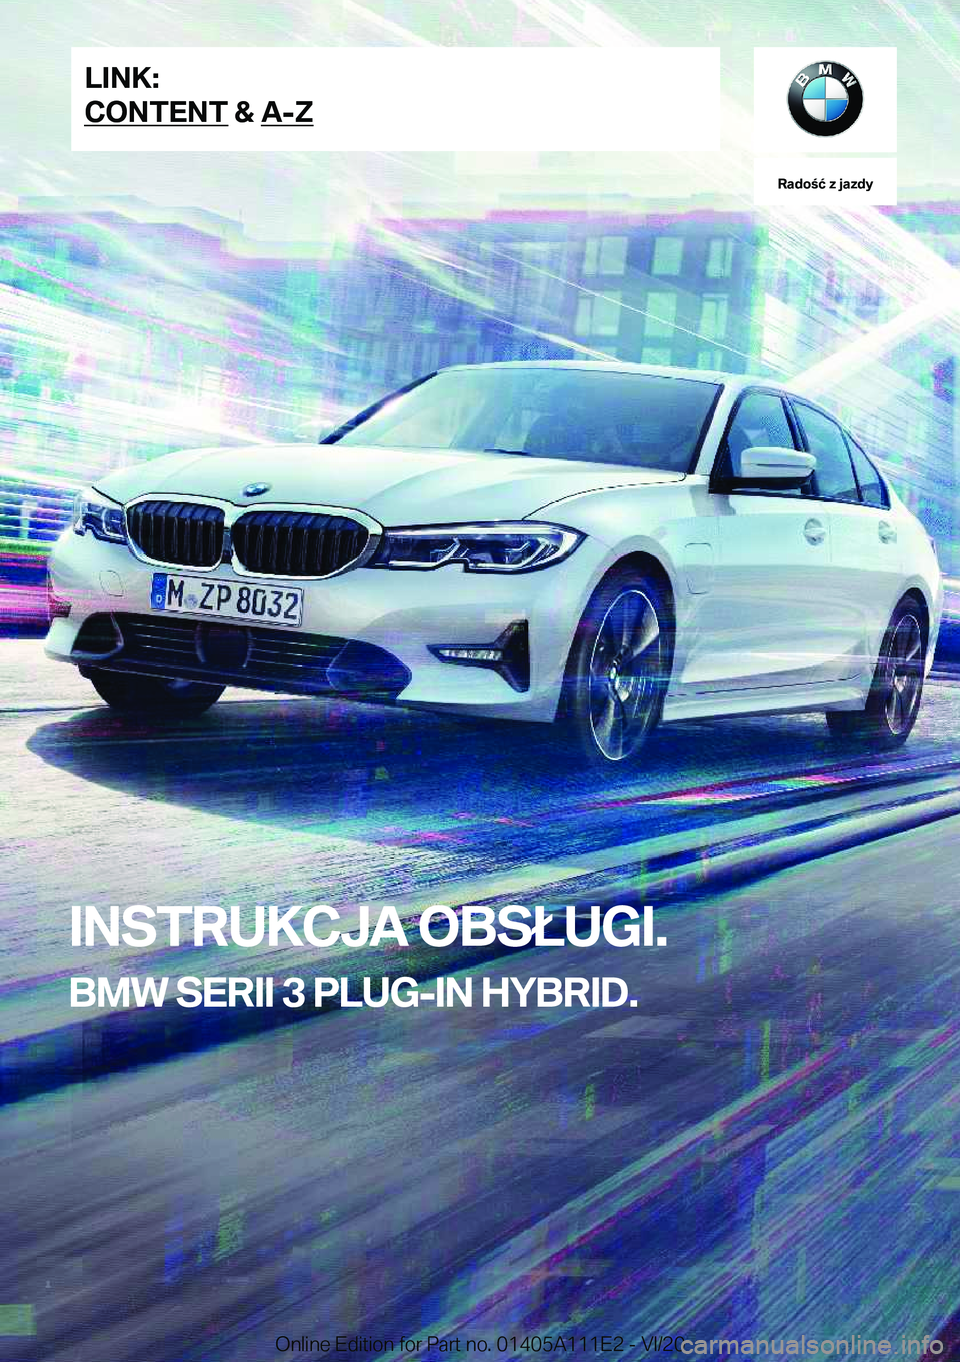 BMW 3 SERIES SEDAN PLUG-IN HYBRID 2021  Instrukcja obsługi (in Polish) �R�a�d�o�ć��z��j�a�z�d�y
�I�N�S�T�R�U�K�C�J�A��O�B�S�Ł�U�G�I�.
�B�M�W��S�E�R�I�I��3��P�L�U�G�-�I�N��H�Y�B�R�I�D�.�L�I�N�K�:
�C�O�N�T�E�N�T��&��A�-�Z�O�n�l�i�n�e��E�d�i�t�i�o�n��f�o�r��